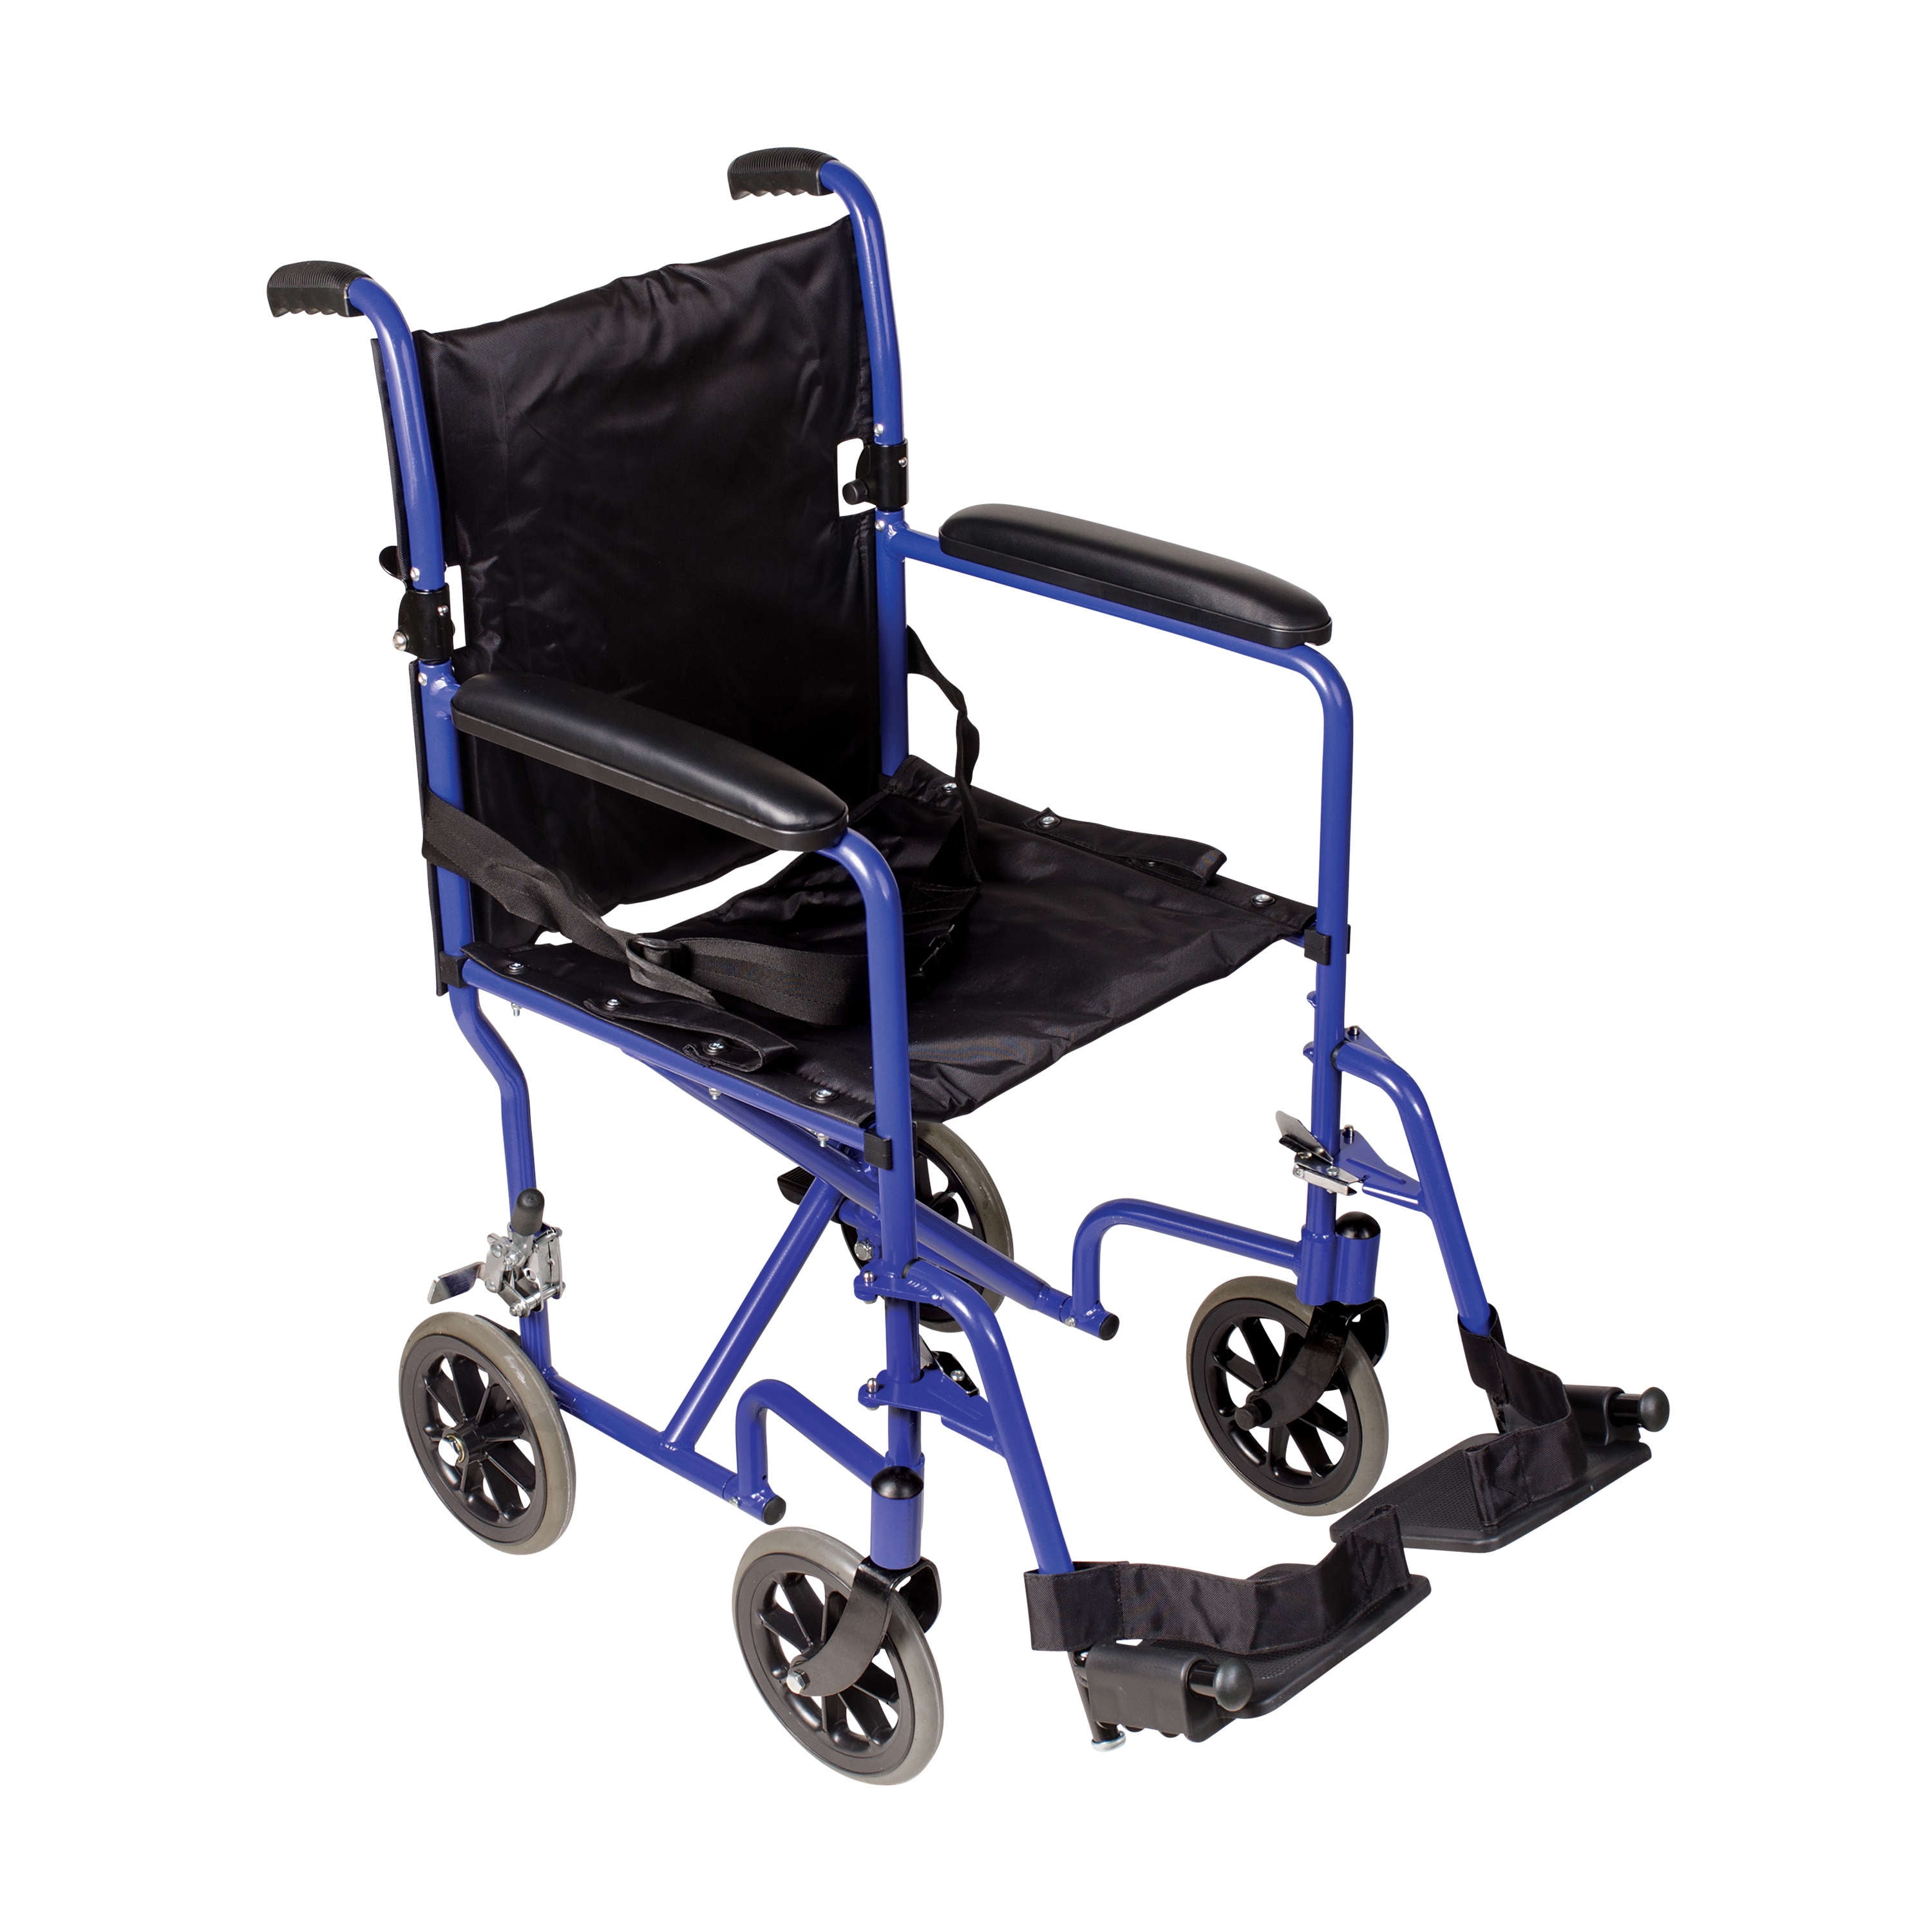 Dmi Ultra Lightweight Folding Transport Chair Travel Wheelchair Royal Blue Walmart Com Walmart Com